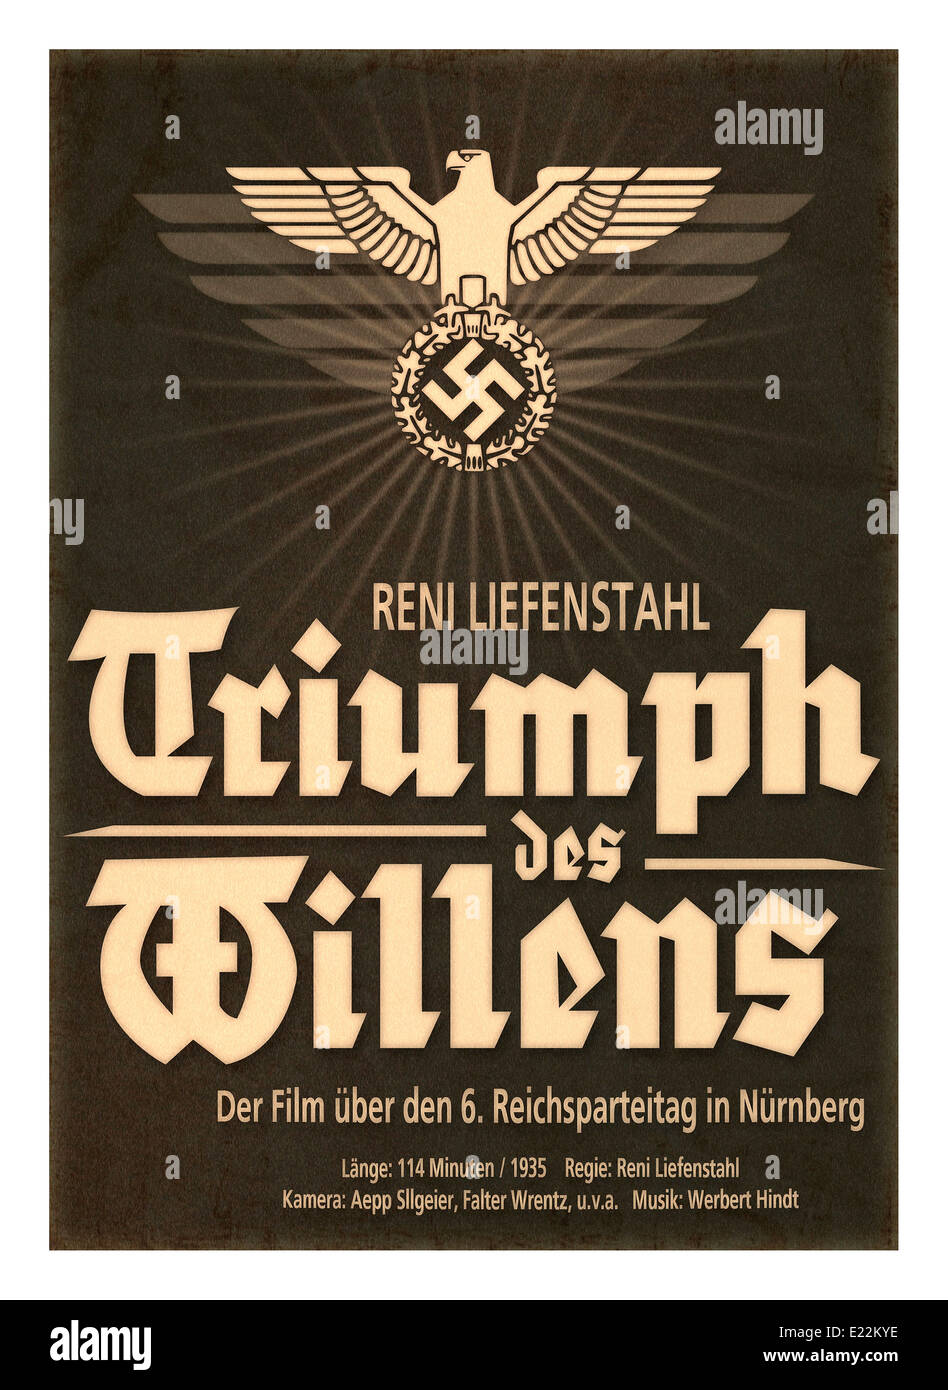 Reni Riefenstahl Nazi propaganda film 'Triumph des Willens' 1934 Poster Stock Photo